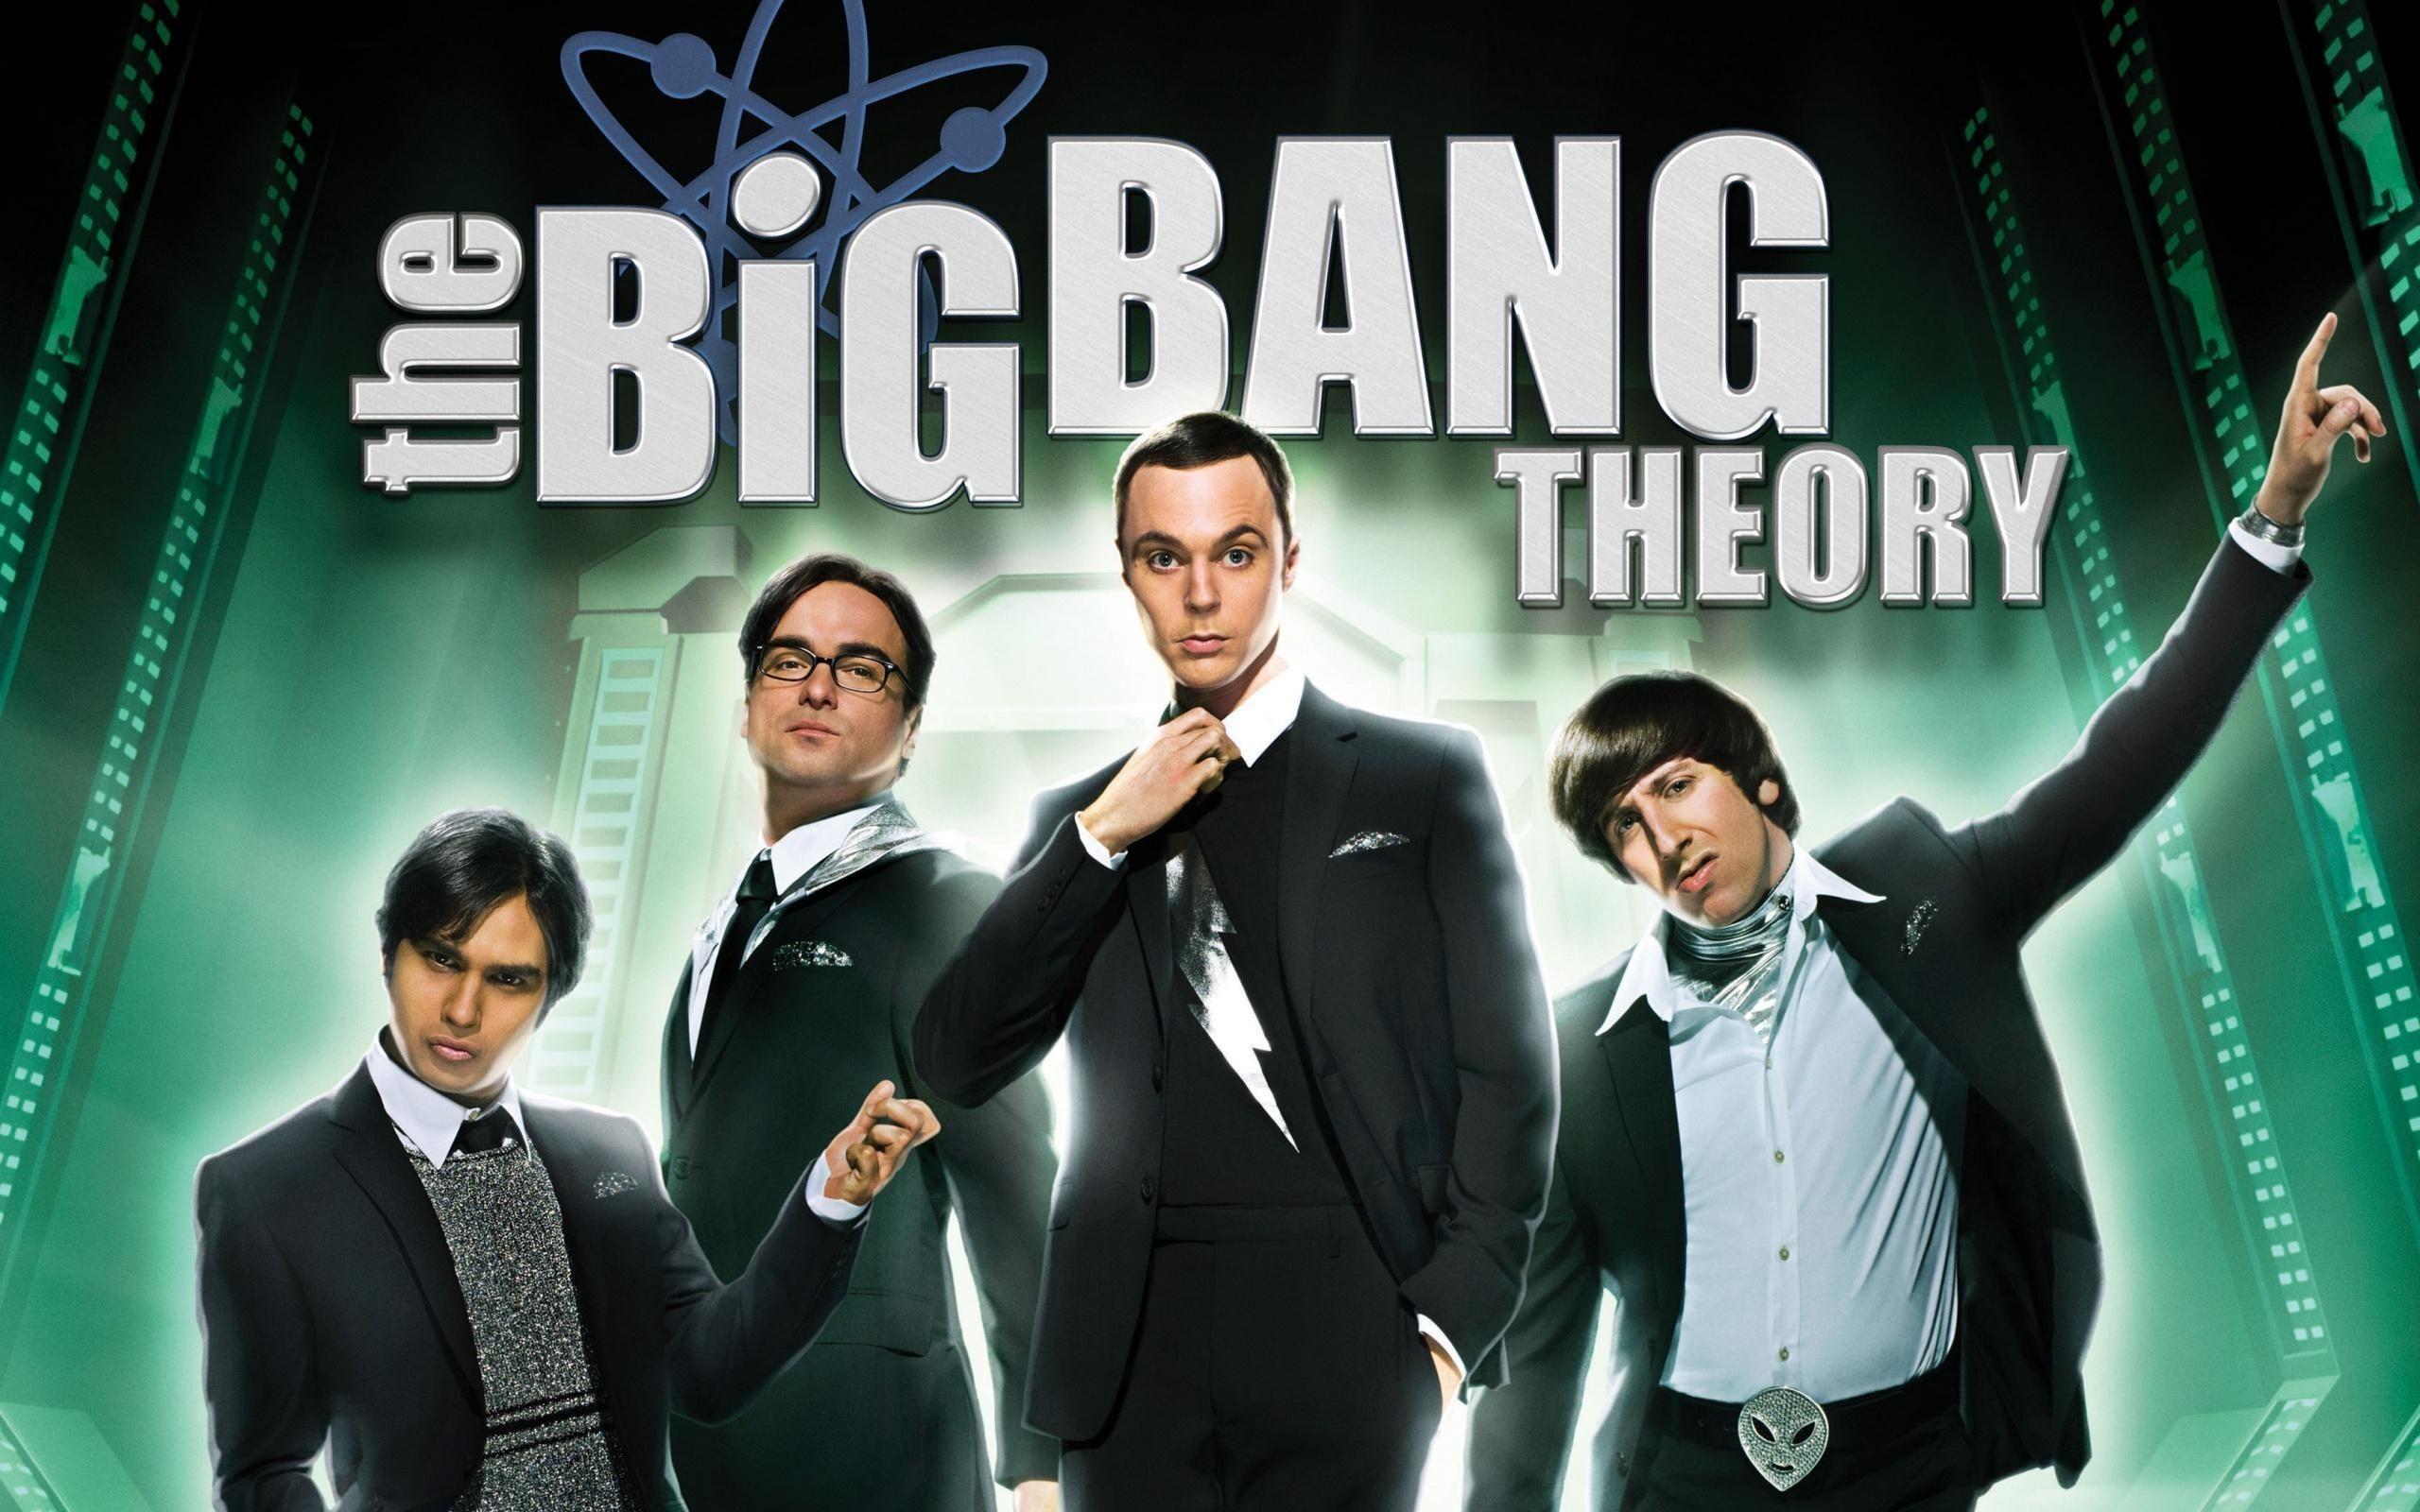 The Big Bang Theory Wallpapers - Wallpaper Cave